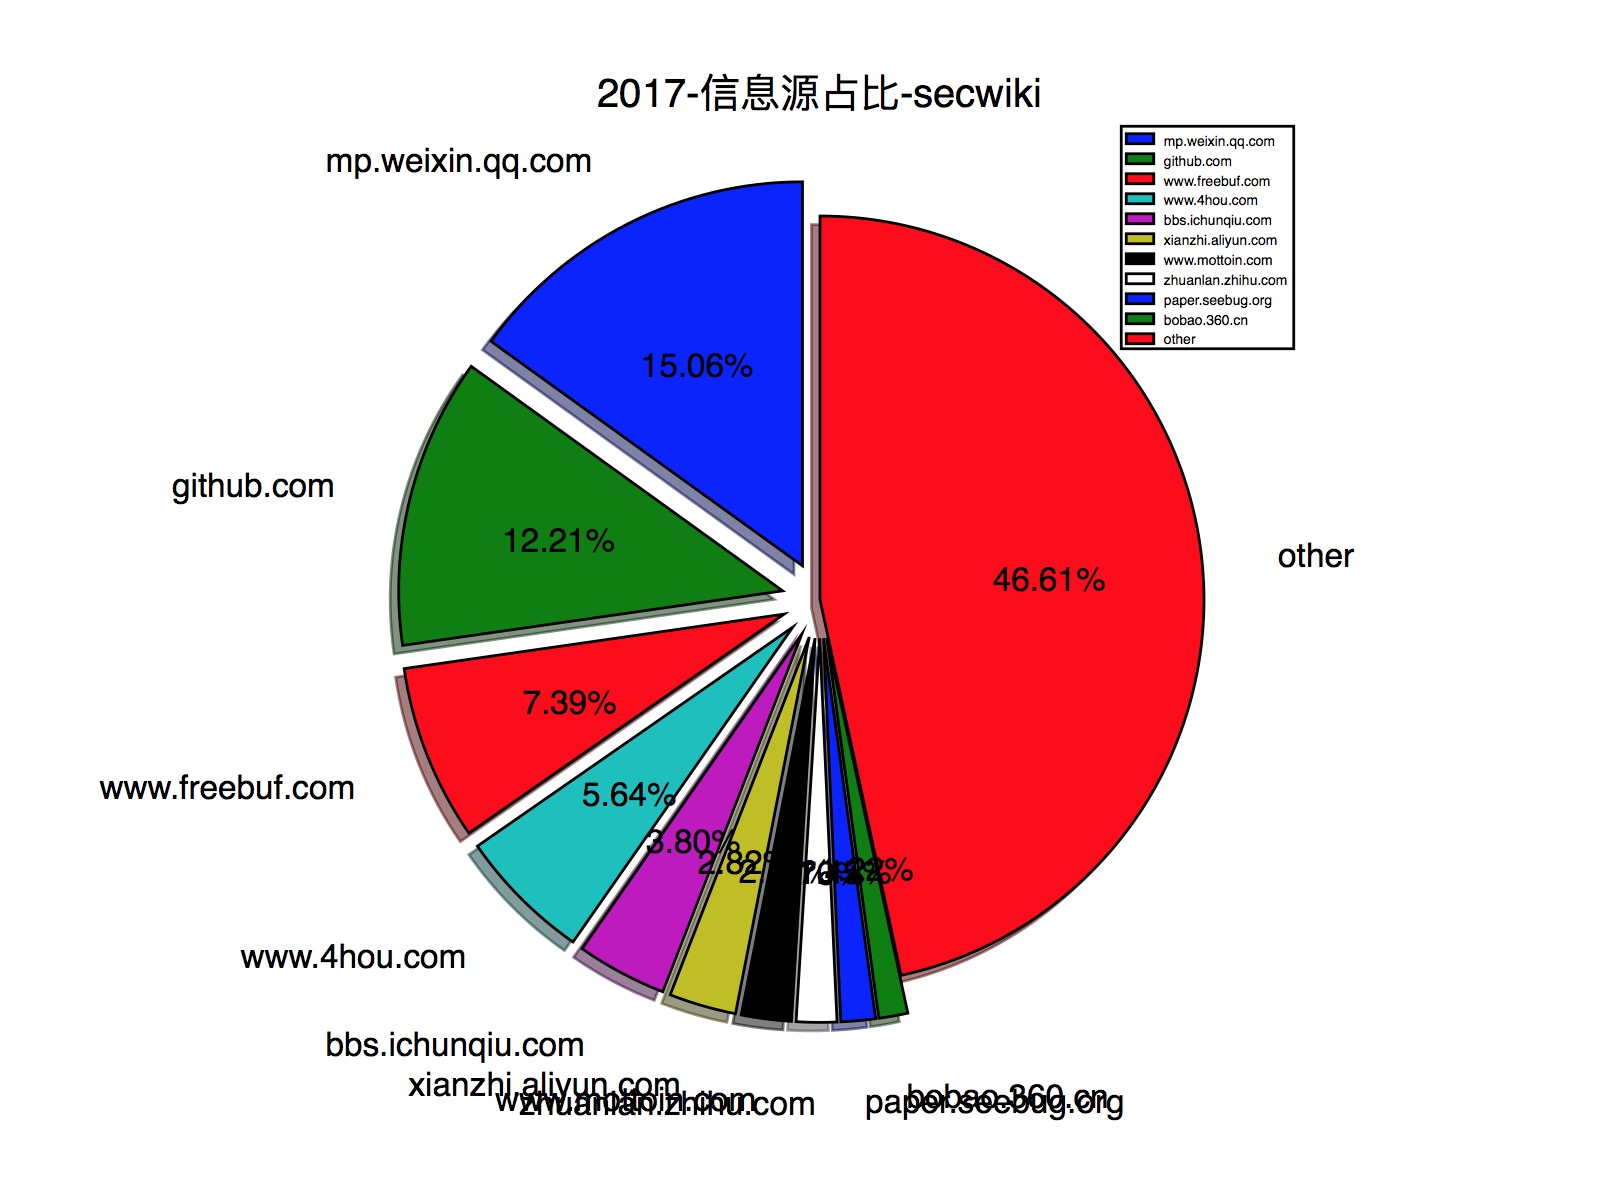 2017-信息源占比-secwiki